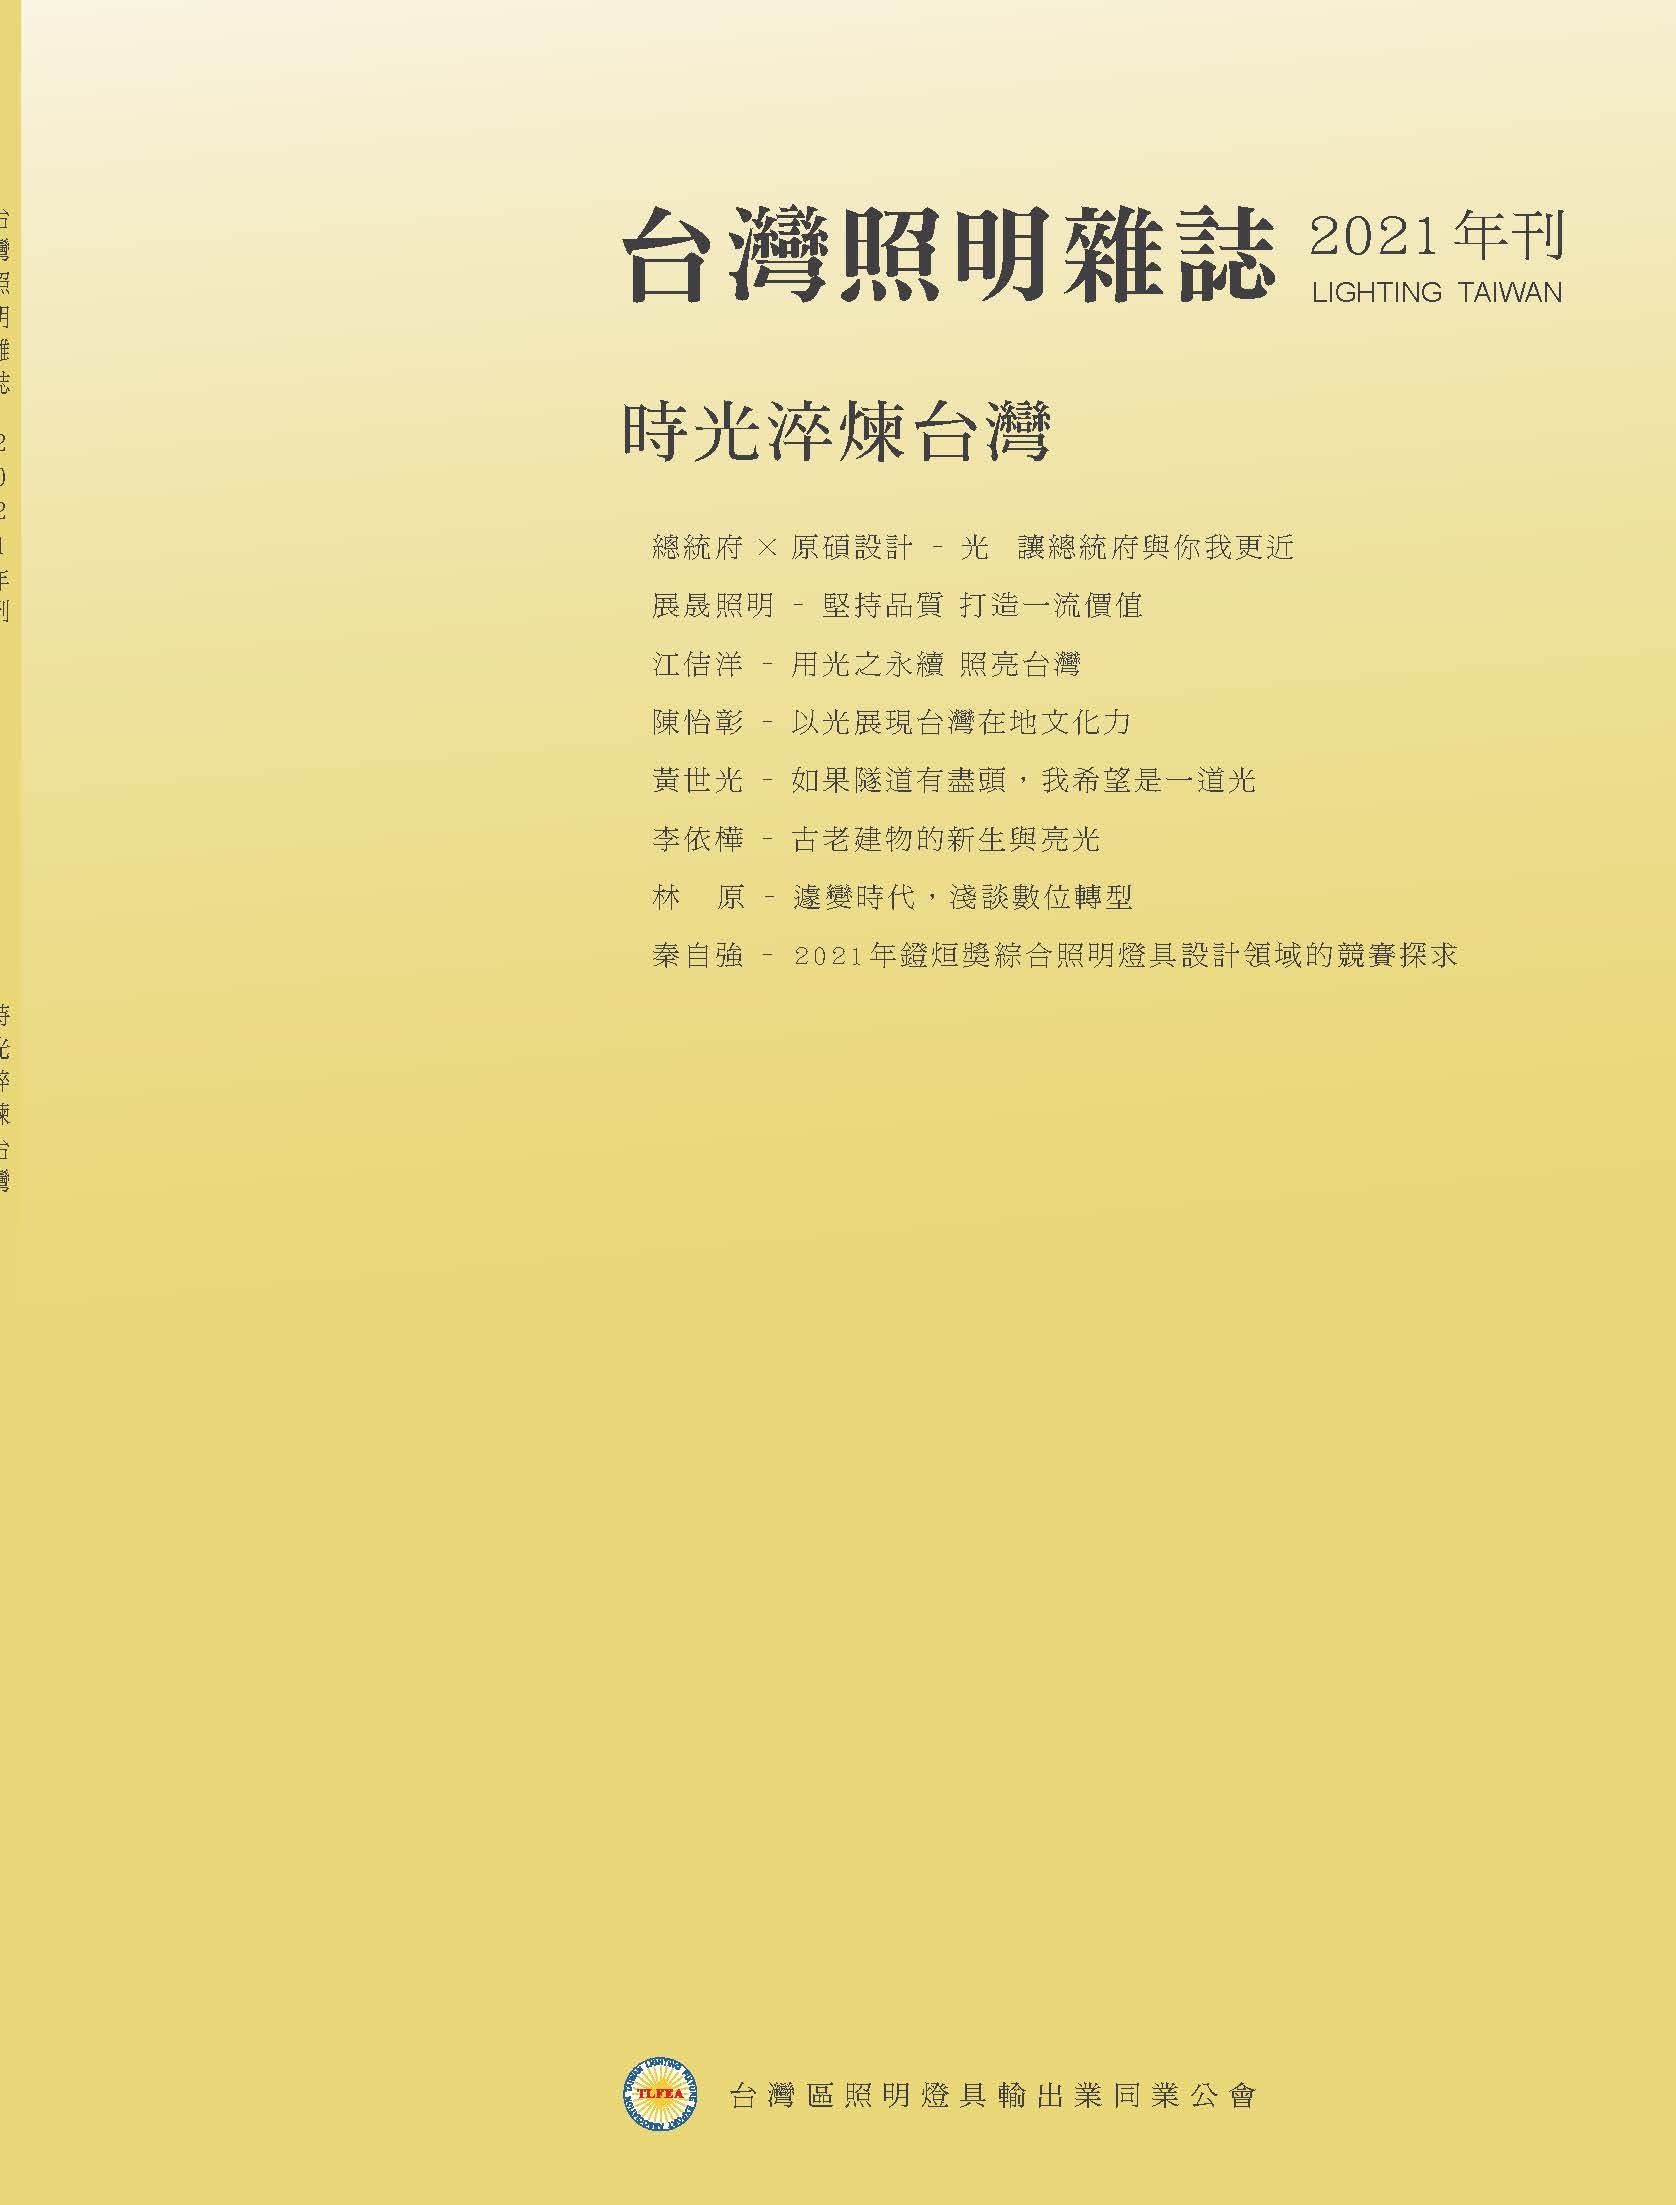 台灣照明雜誌2021年刊